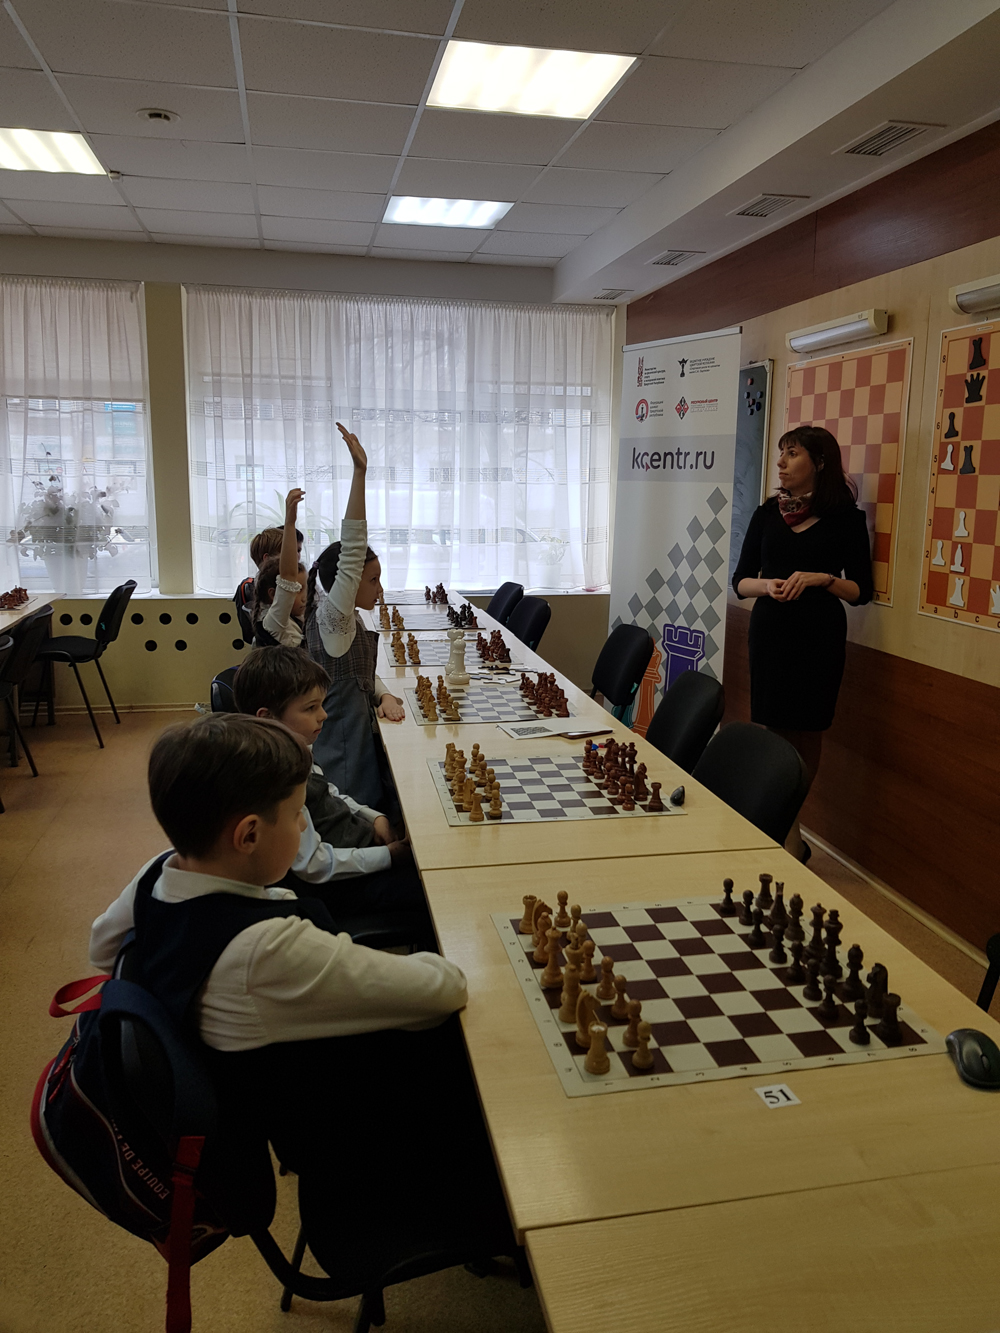 Мастер ФИДЕ по шахматам,  руководитель ресурсного шахматного центра в Ижевске Светлана Дерябина ведёт урок для младших школьников.